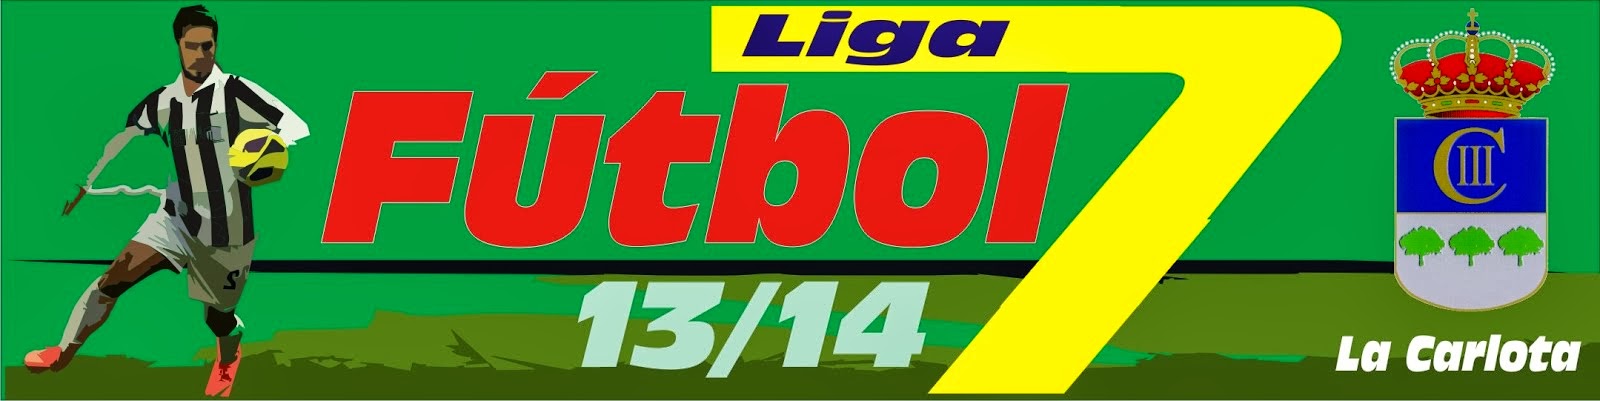 III Liga Fútbol 7 La Carlota 1314